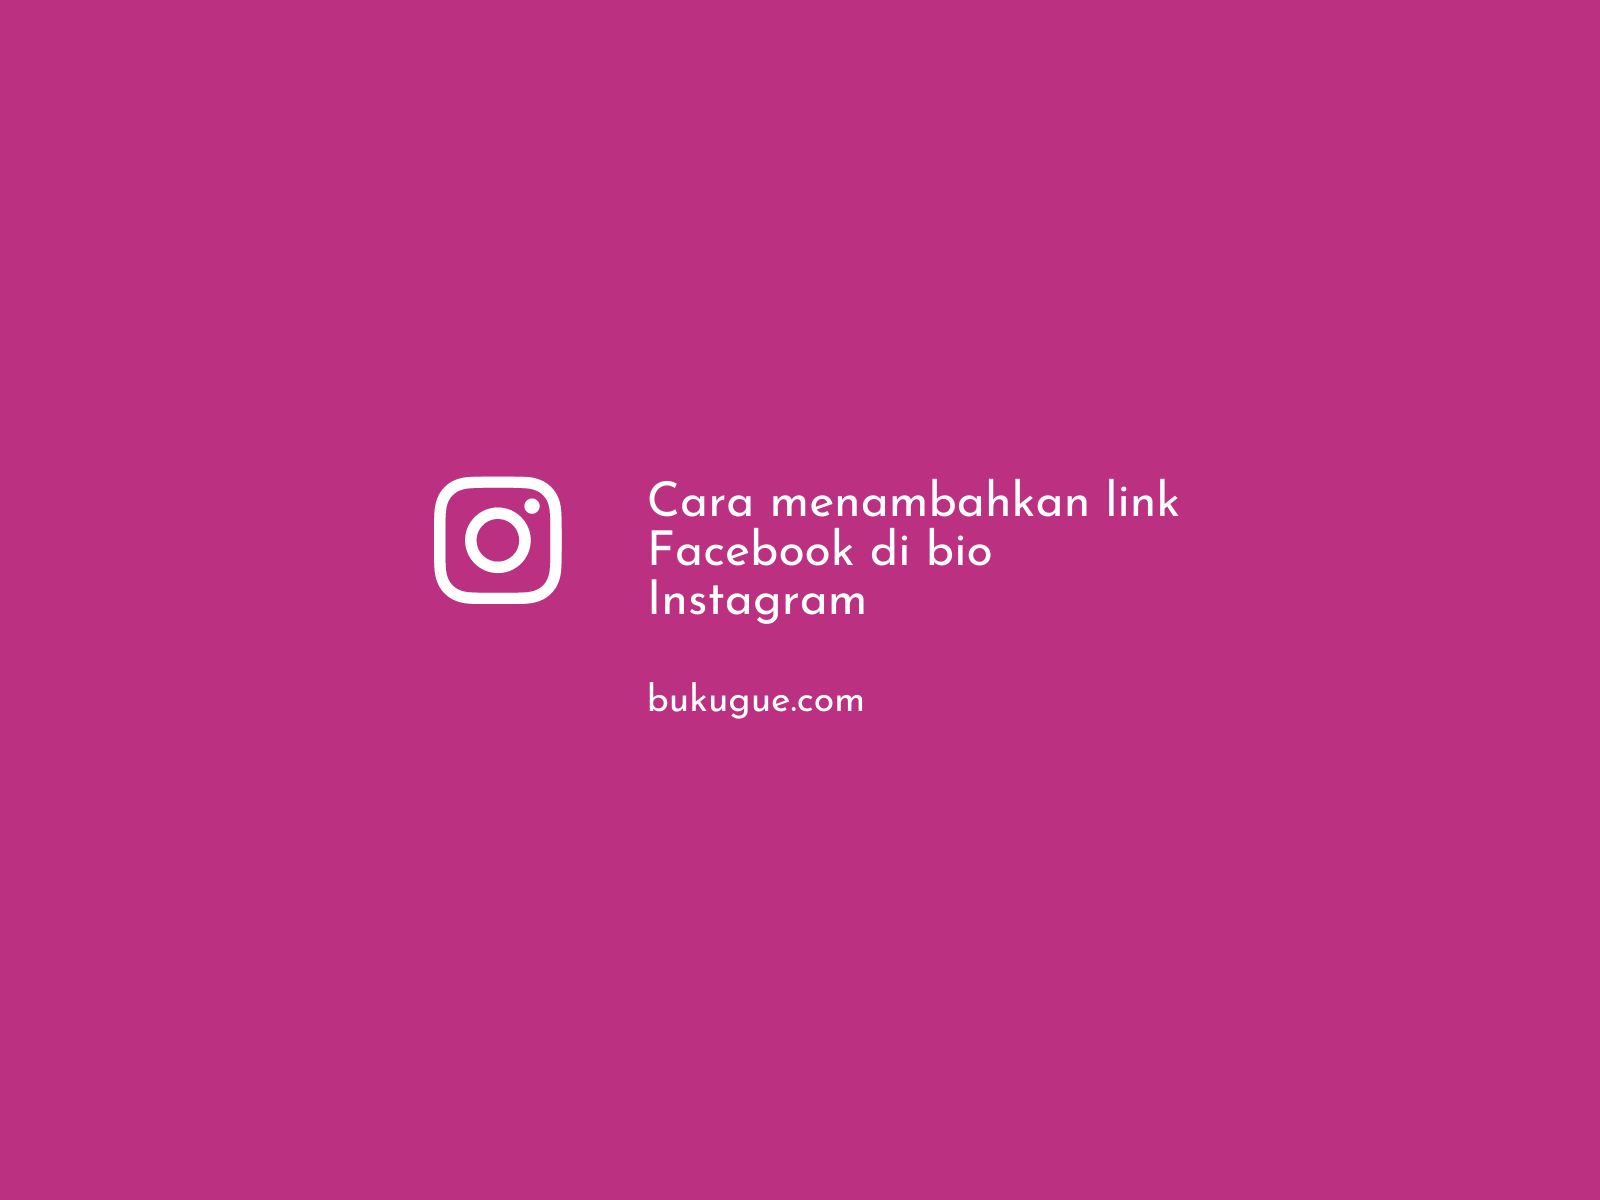 Cara menambahkan link Facebook di bio Instagram